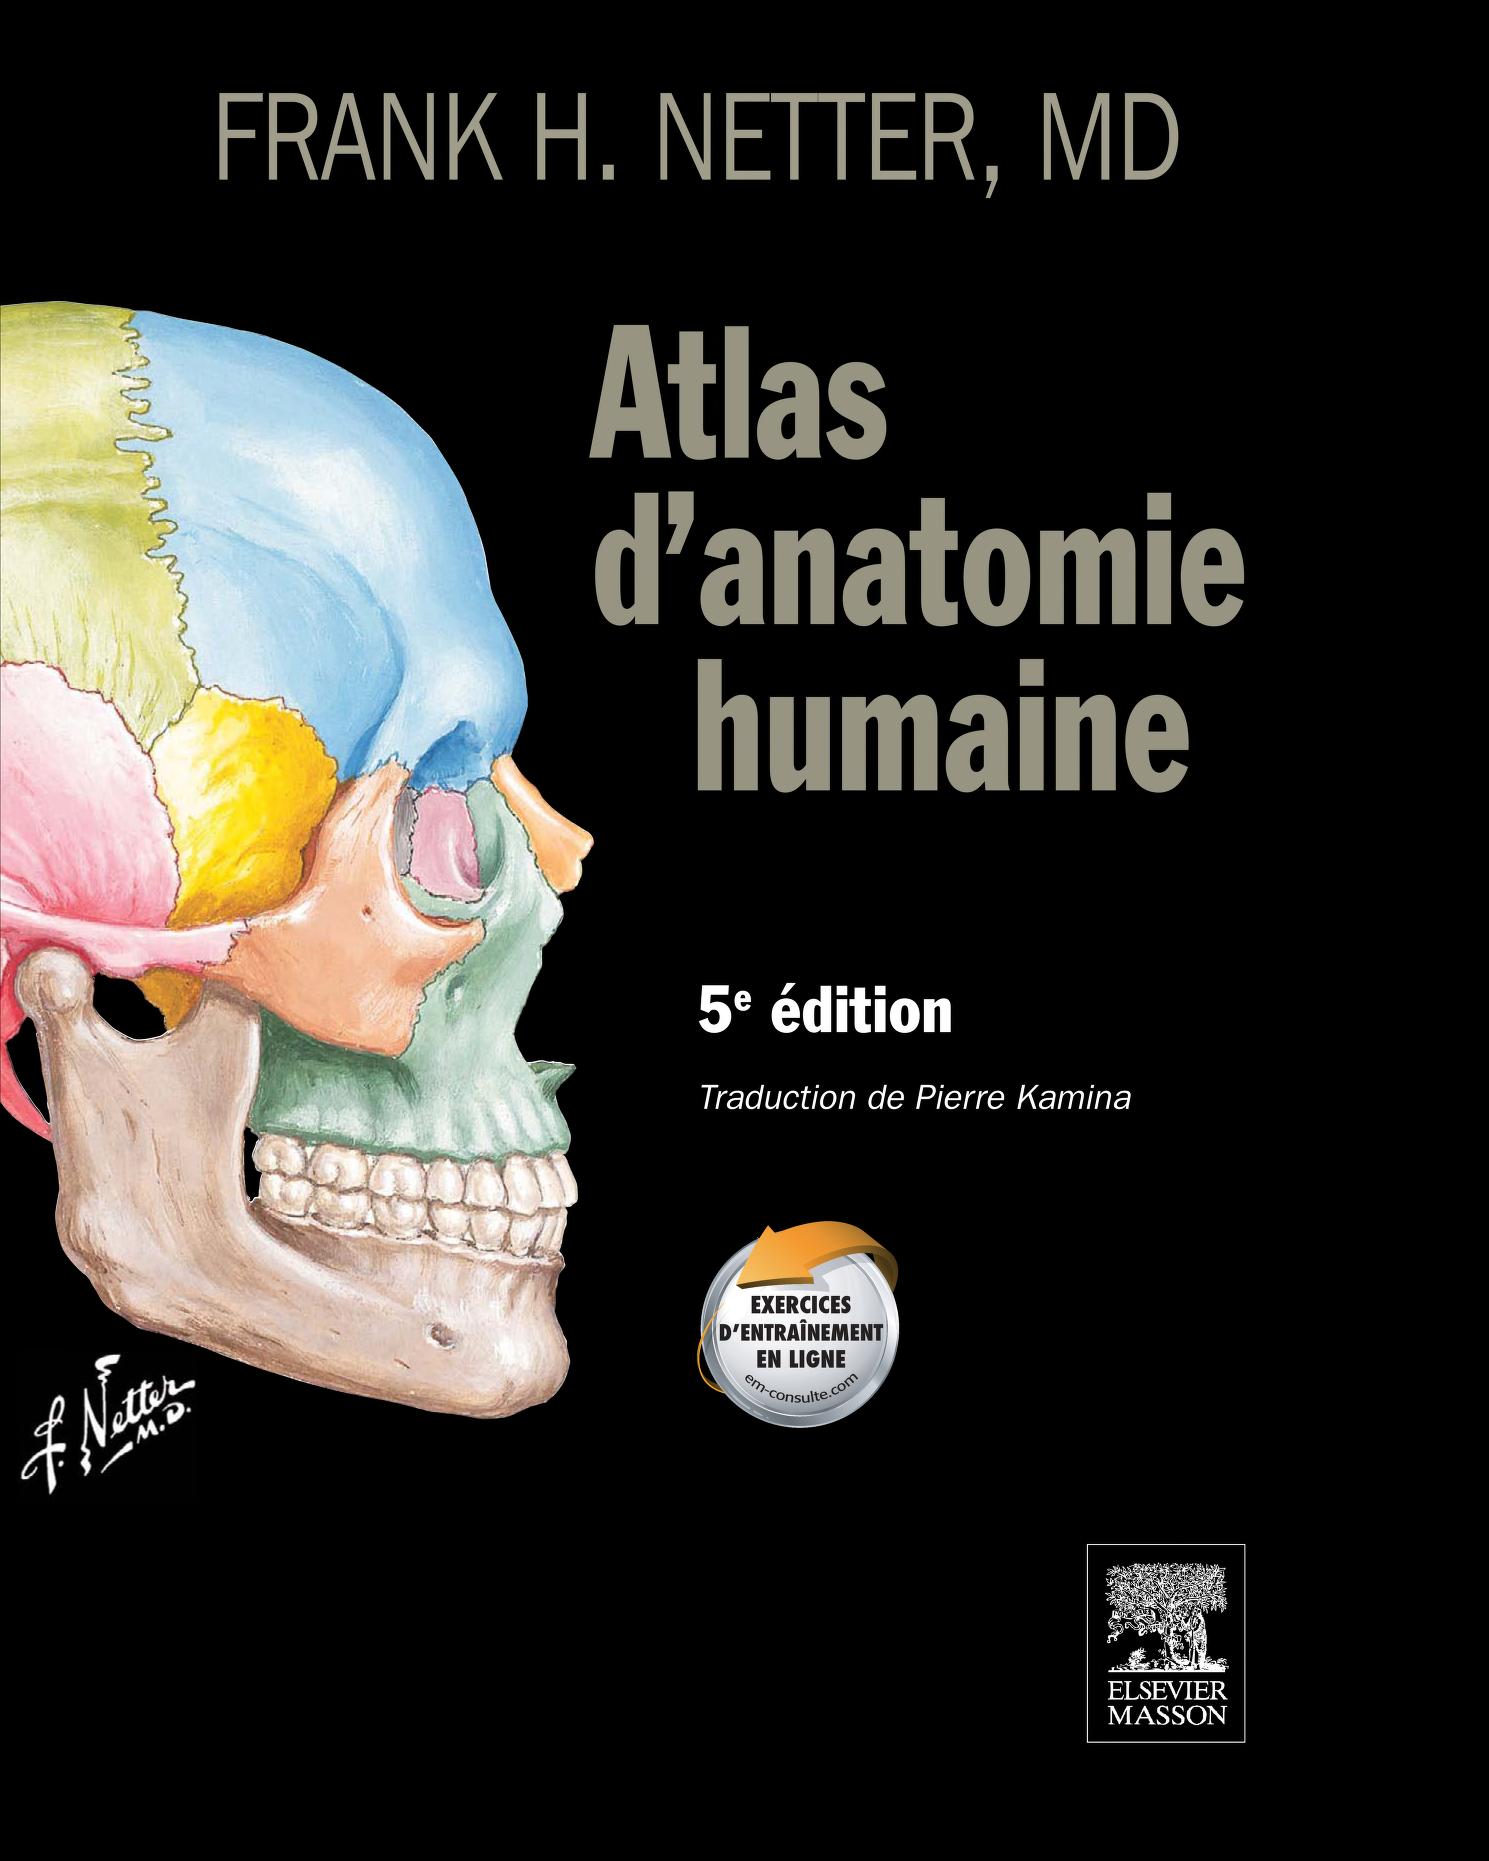 Фрэнк неттер. Атлас анатомии человека Фрэнк Неттер 4 издание. Атлас анатомии человека Фрэнк Неттер 7 издание. Фрэнк Неттер страницы.